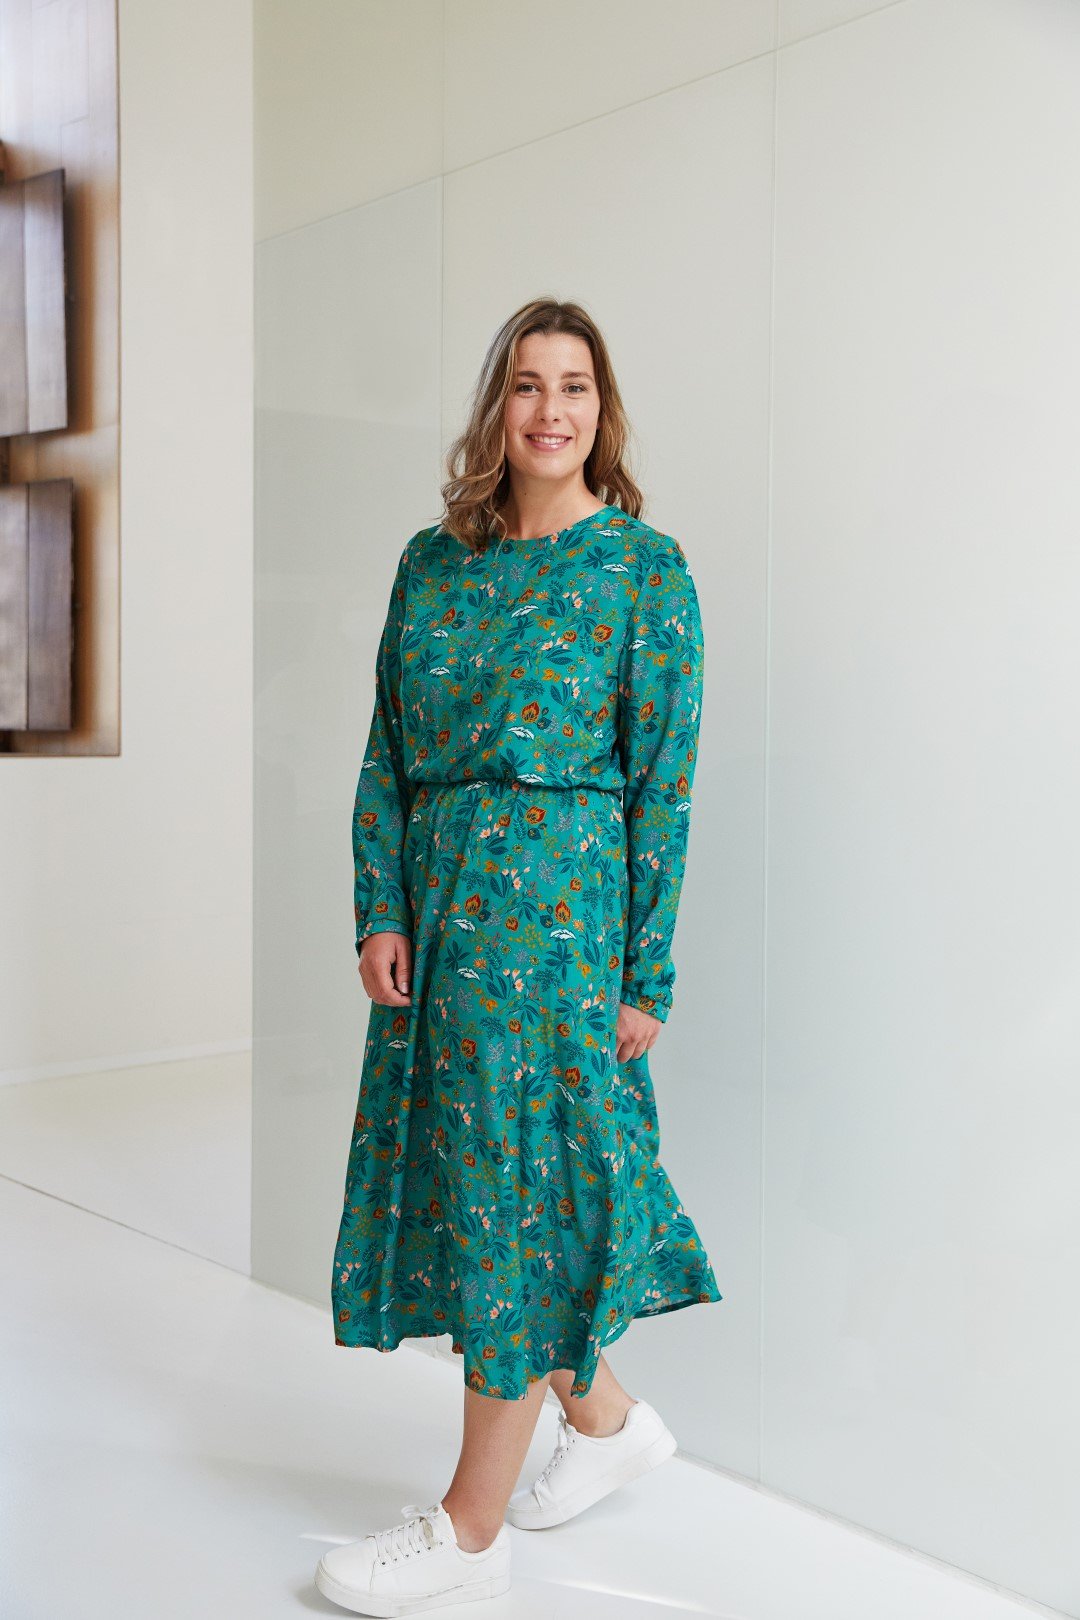 Atelier Jupe - Sienna Winter Dress Sewing Pattern